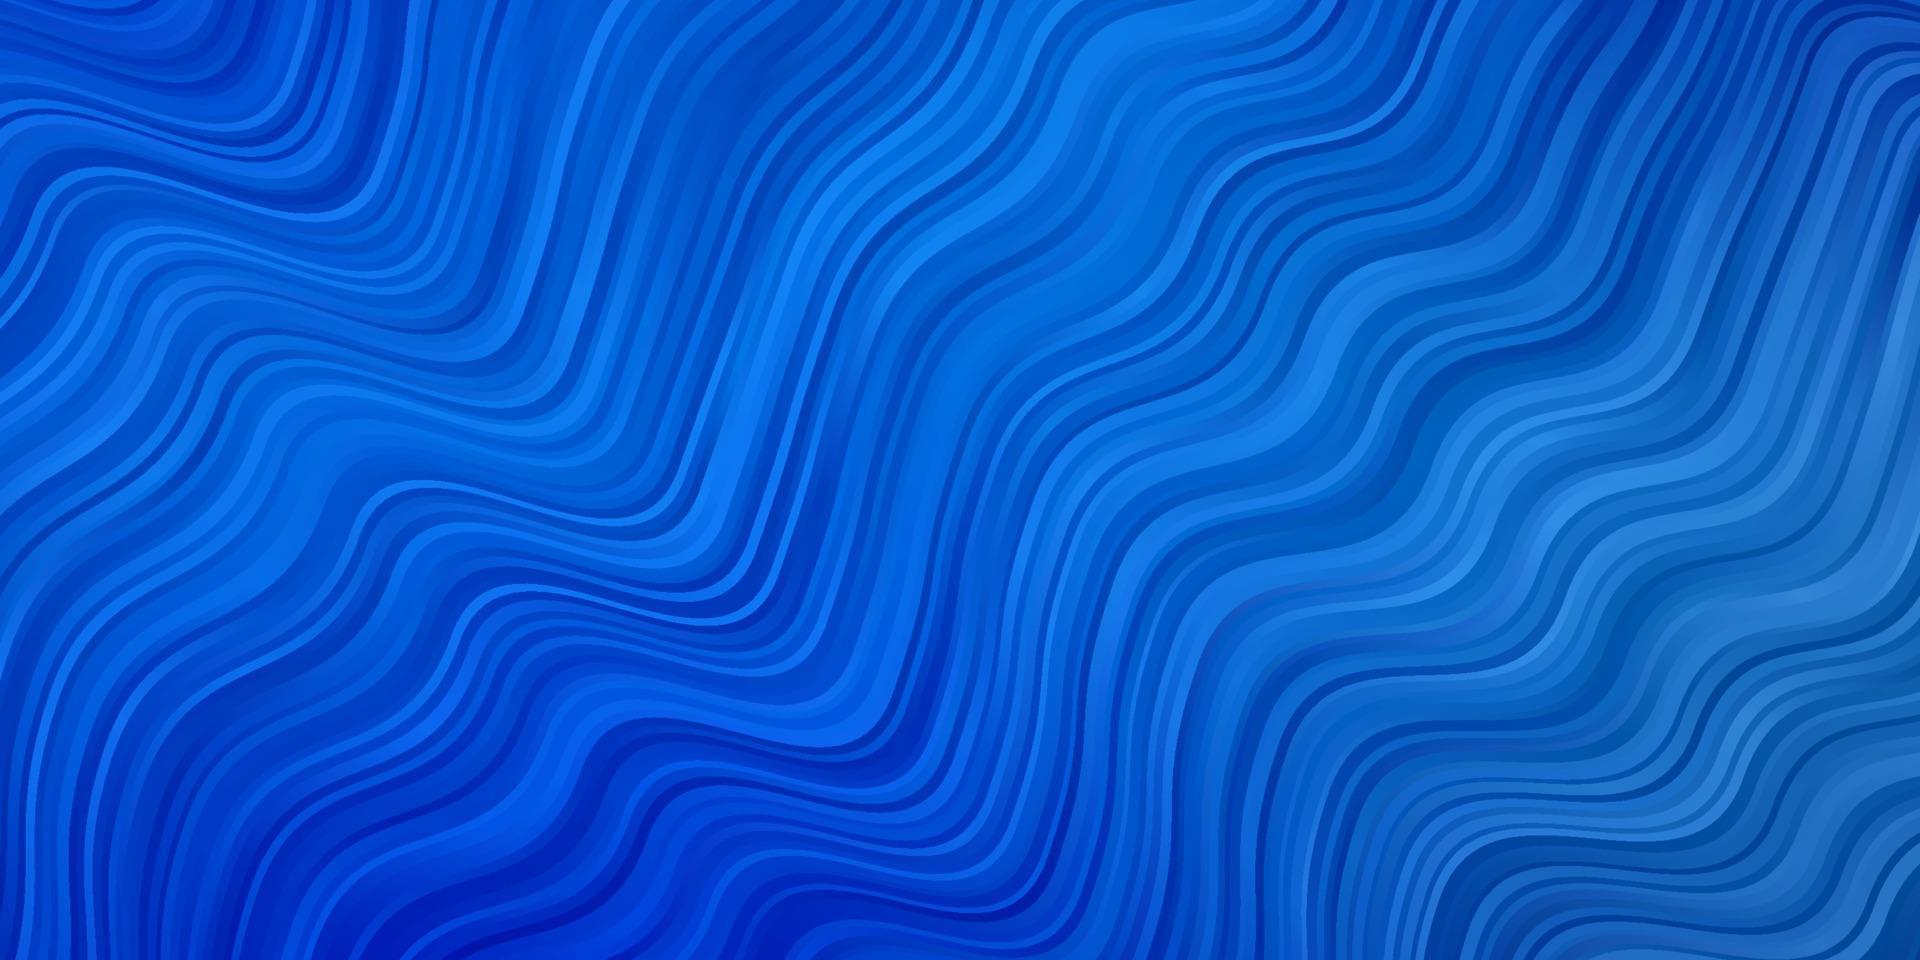 modèle vectoriel bleu clair avec des lignes courbes.